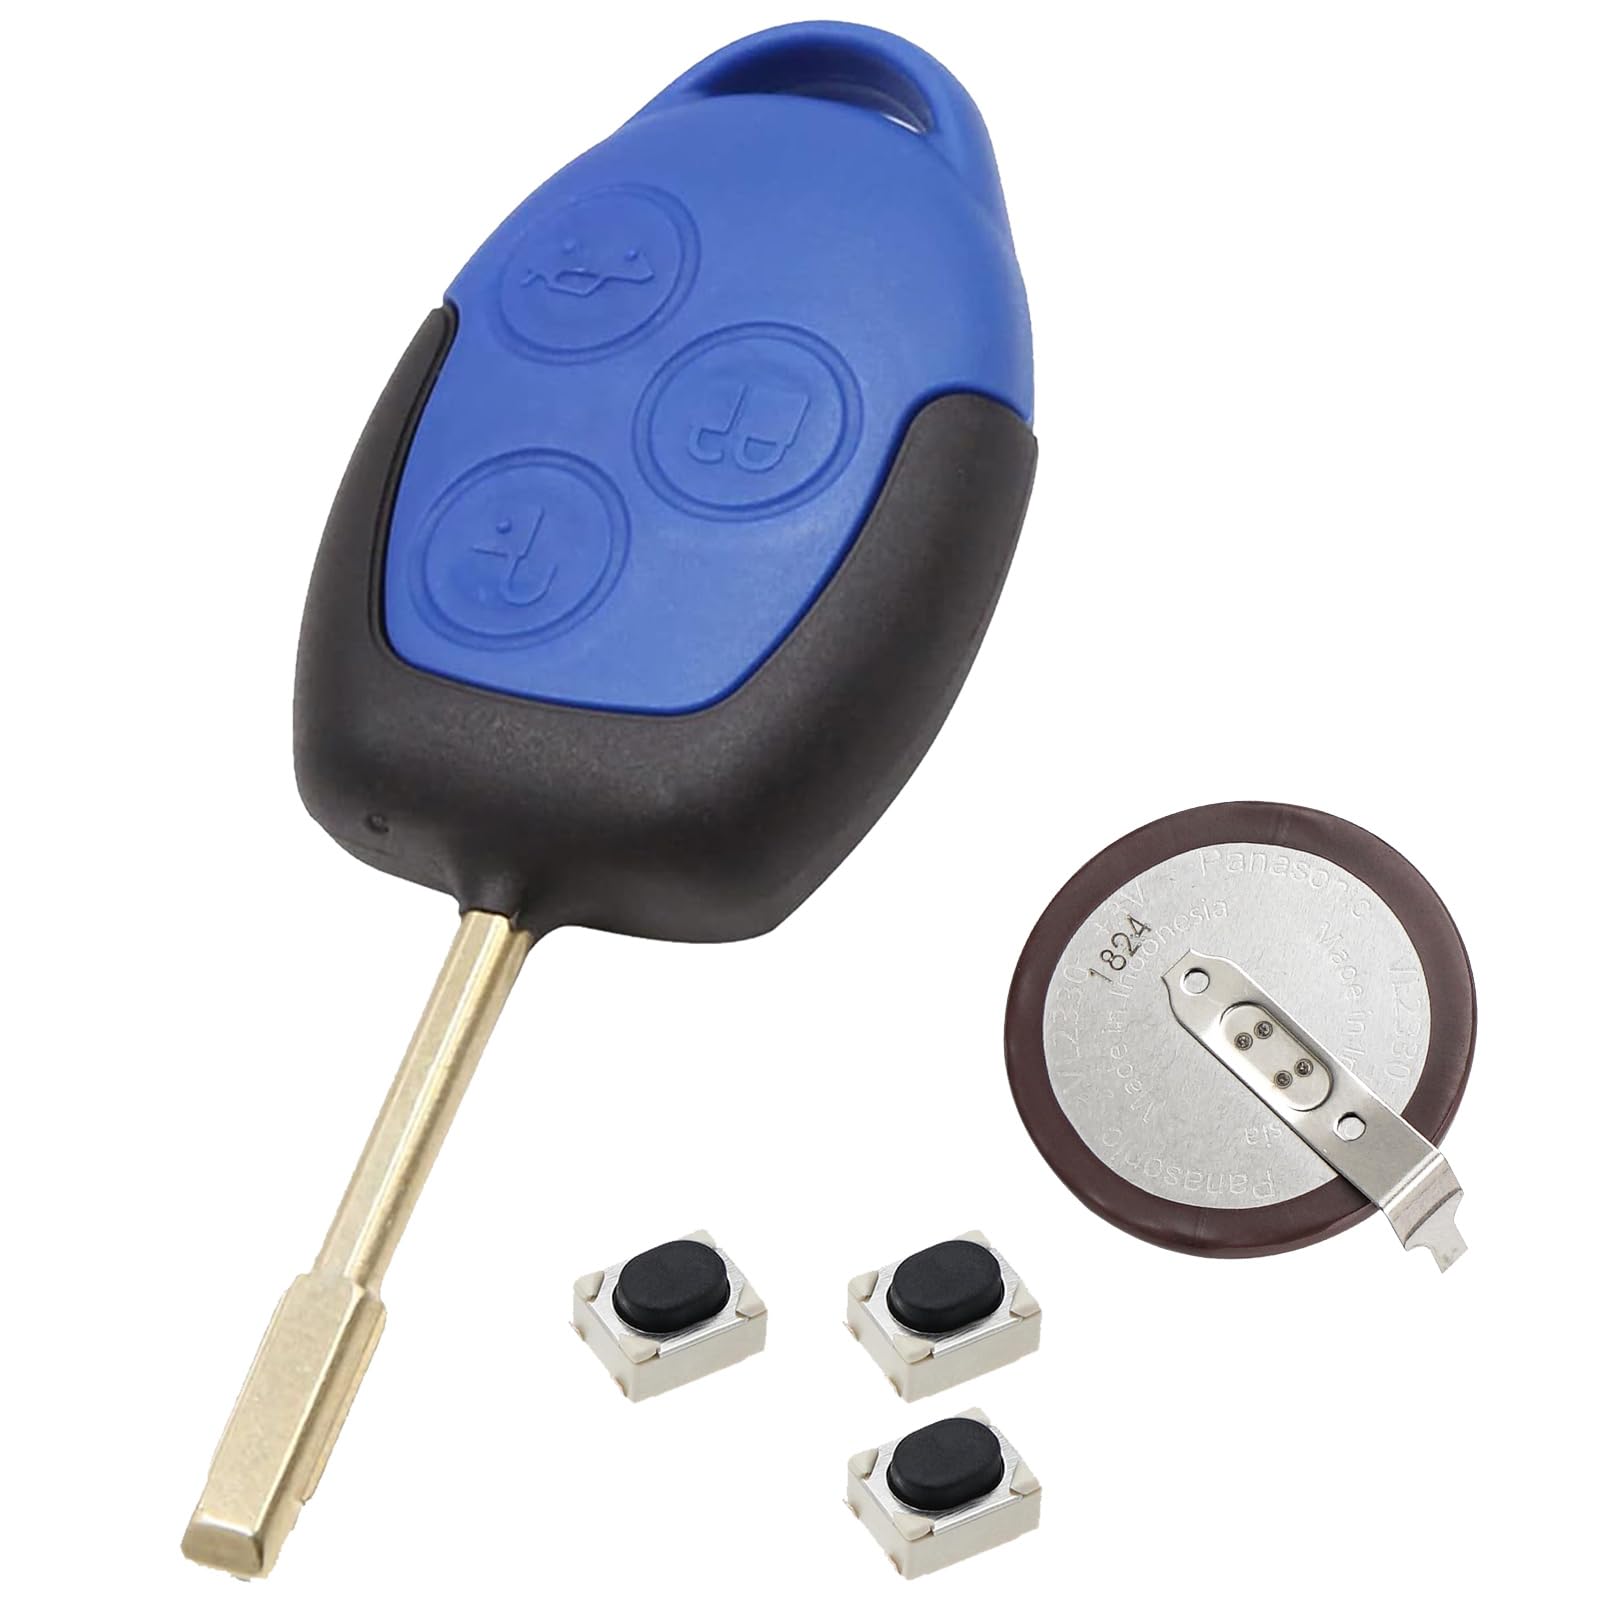 Funkschlüsselgehäuse für Ford Transit 3 Tasten für Ford Transit MK7 Schlüssel Transit MK7 Schlüssel Transit Schlüsselanhänger mit VL2330 Batterieschaltern x3 von Vailikey